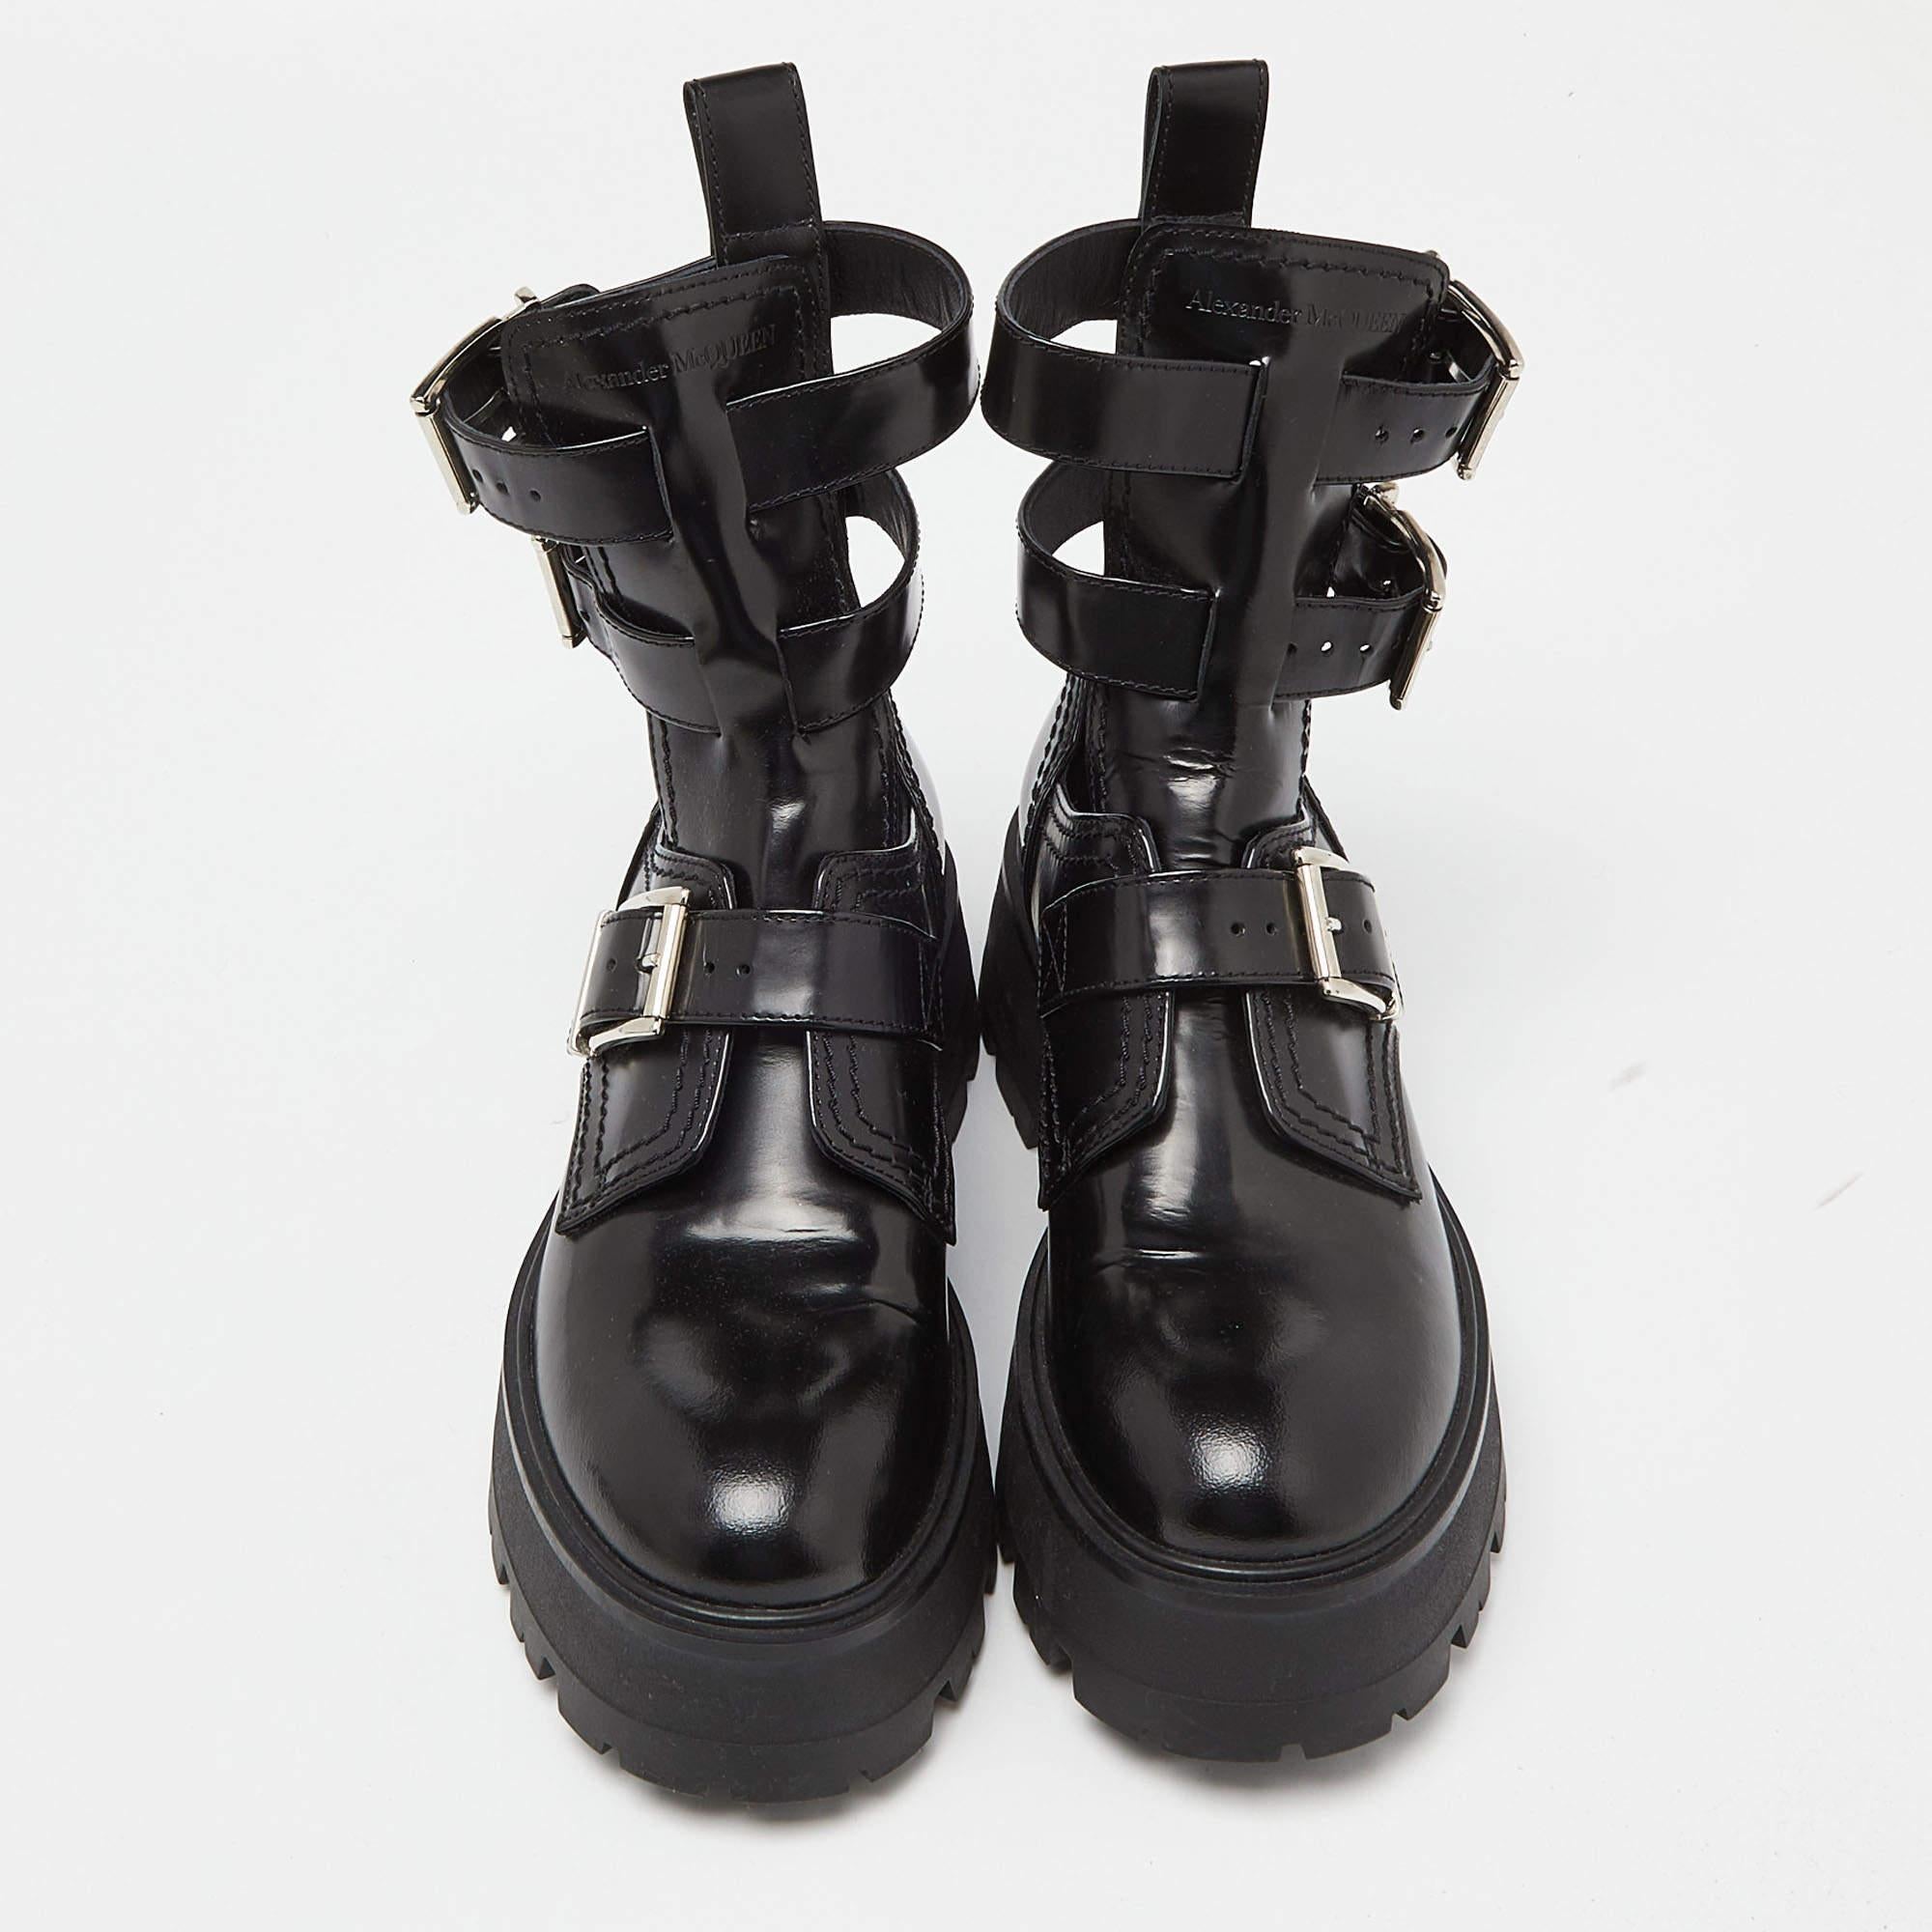 Les bottes sont un élément essentiel de votre garde-robe, et ces bottes, fabriquées à partir de matériaux de première qualité, sont un bon choix. Offrant le meilleur du confort et du style, cette paire à semelle robuste sera parfaite avec une robe